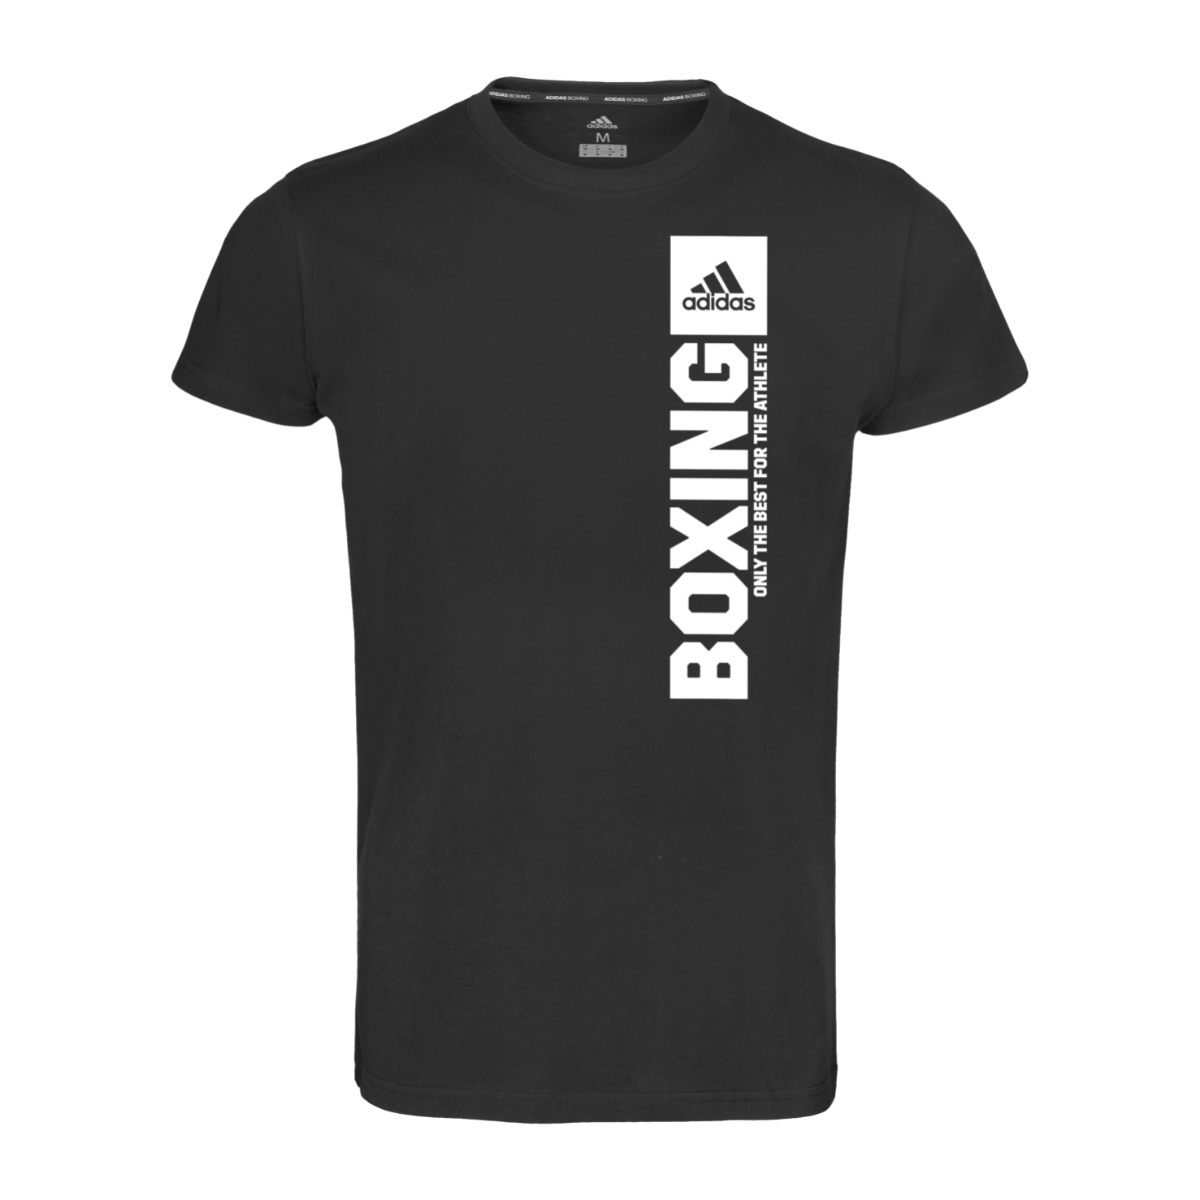 Buy Adidas Boxing T-Shirt Black